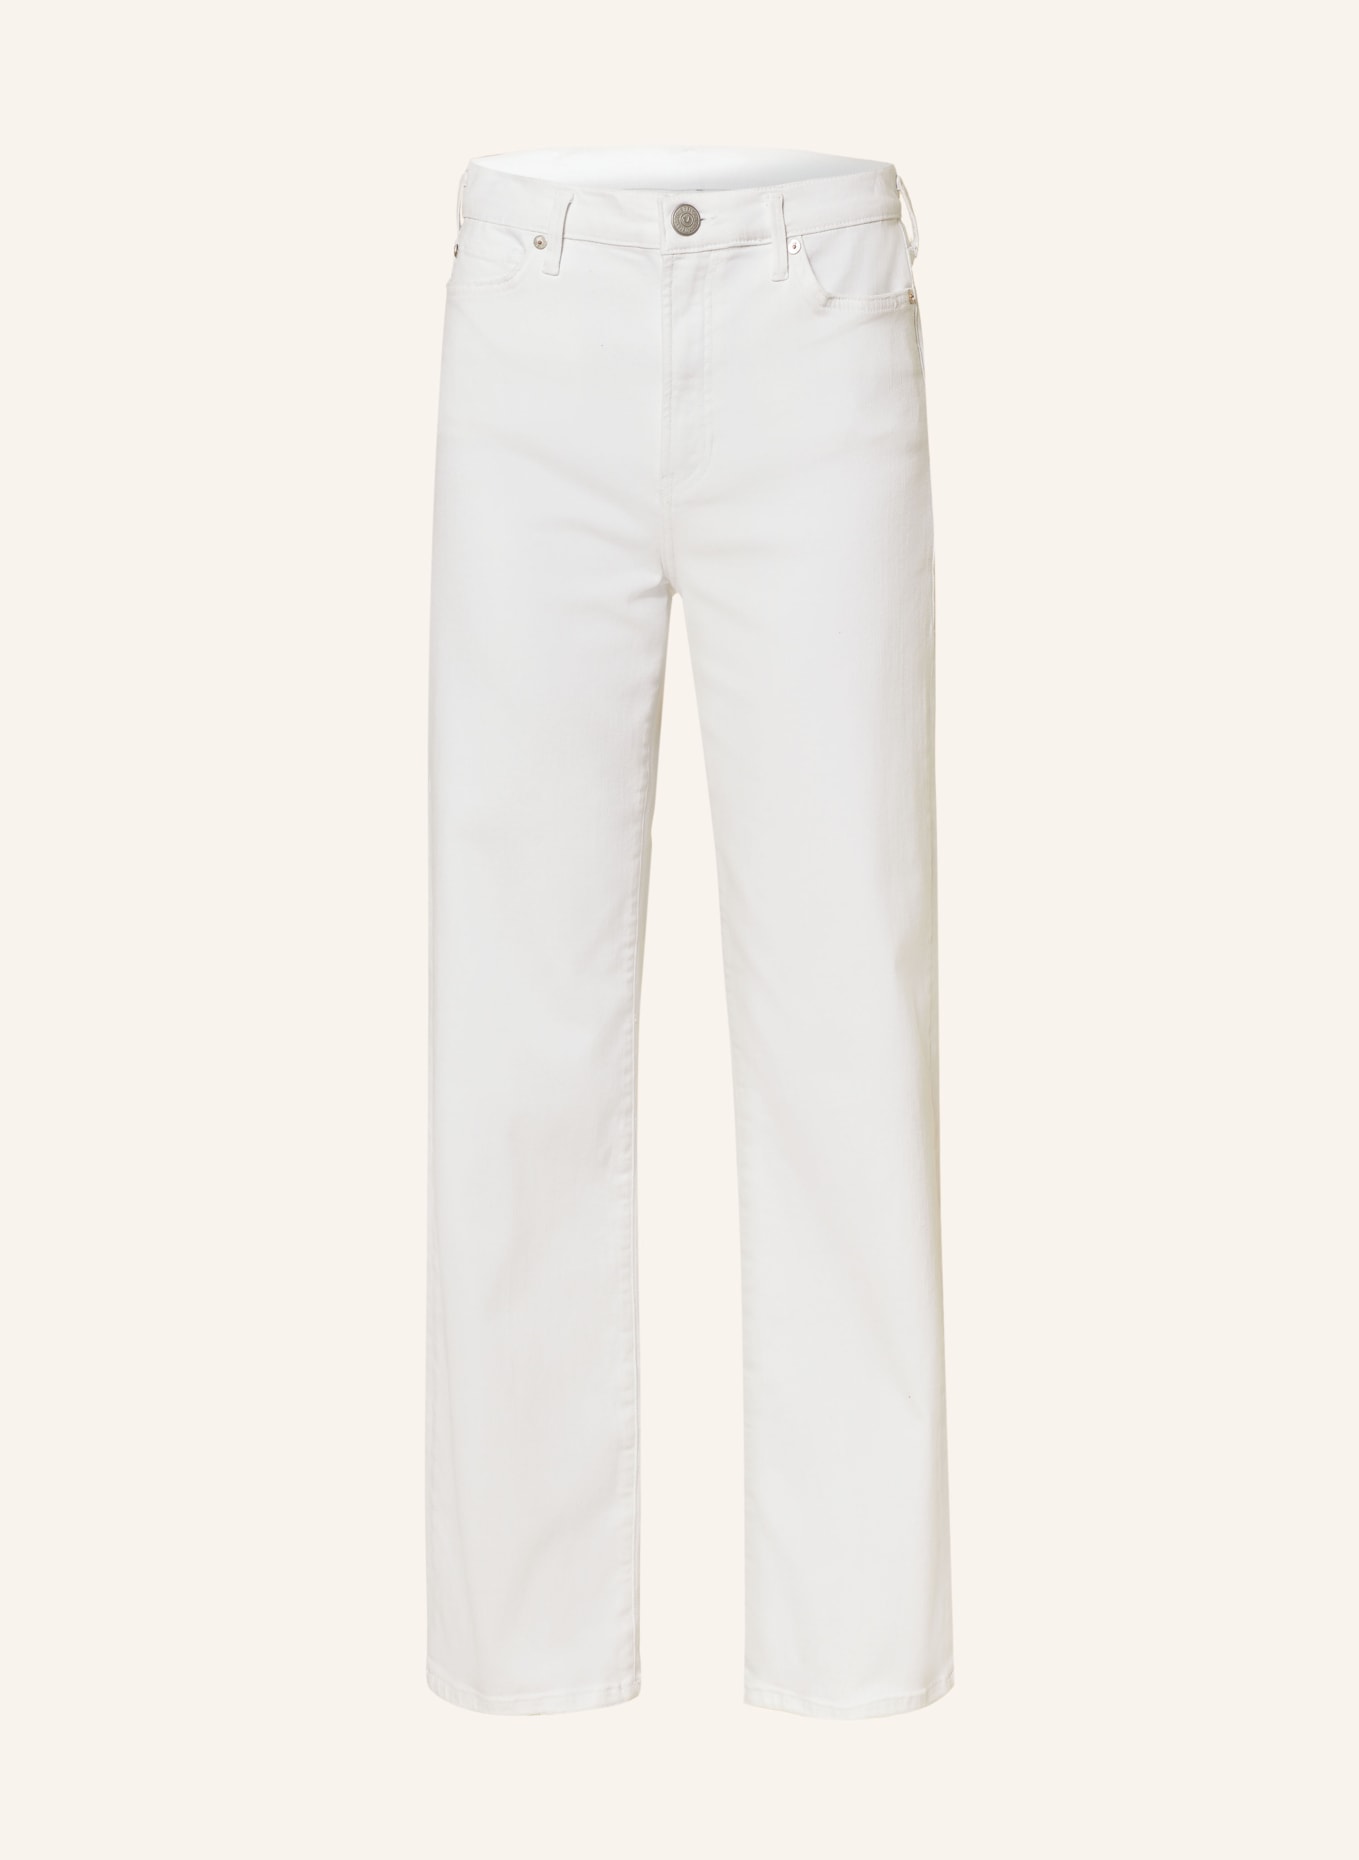 TRUE RELIGION Jeans SHIRLEY, Farbe: 1700 WHITE (Bild 1)